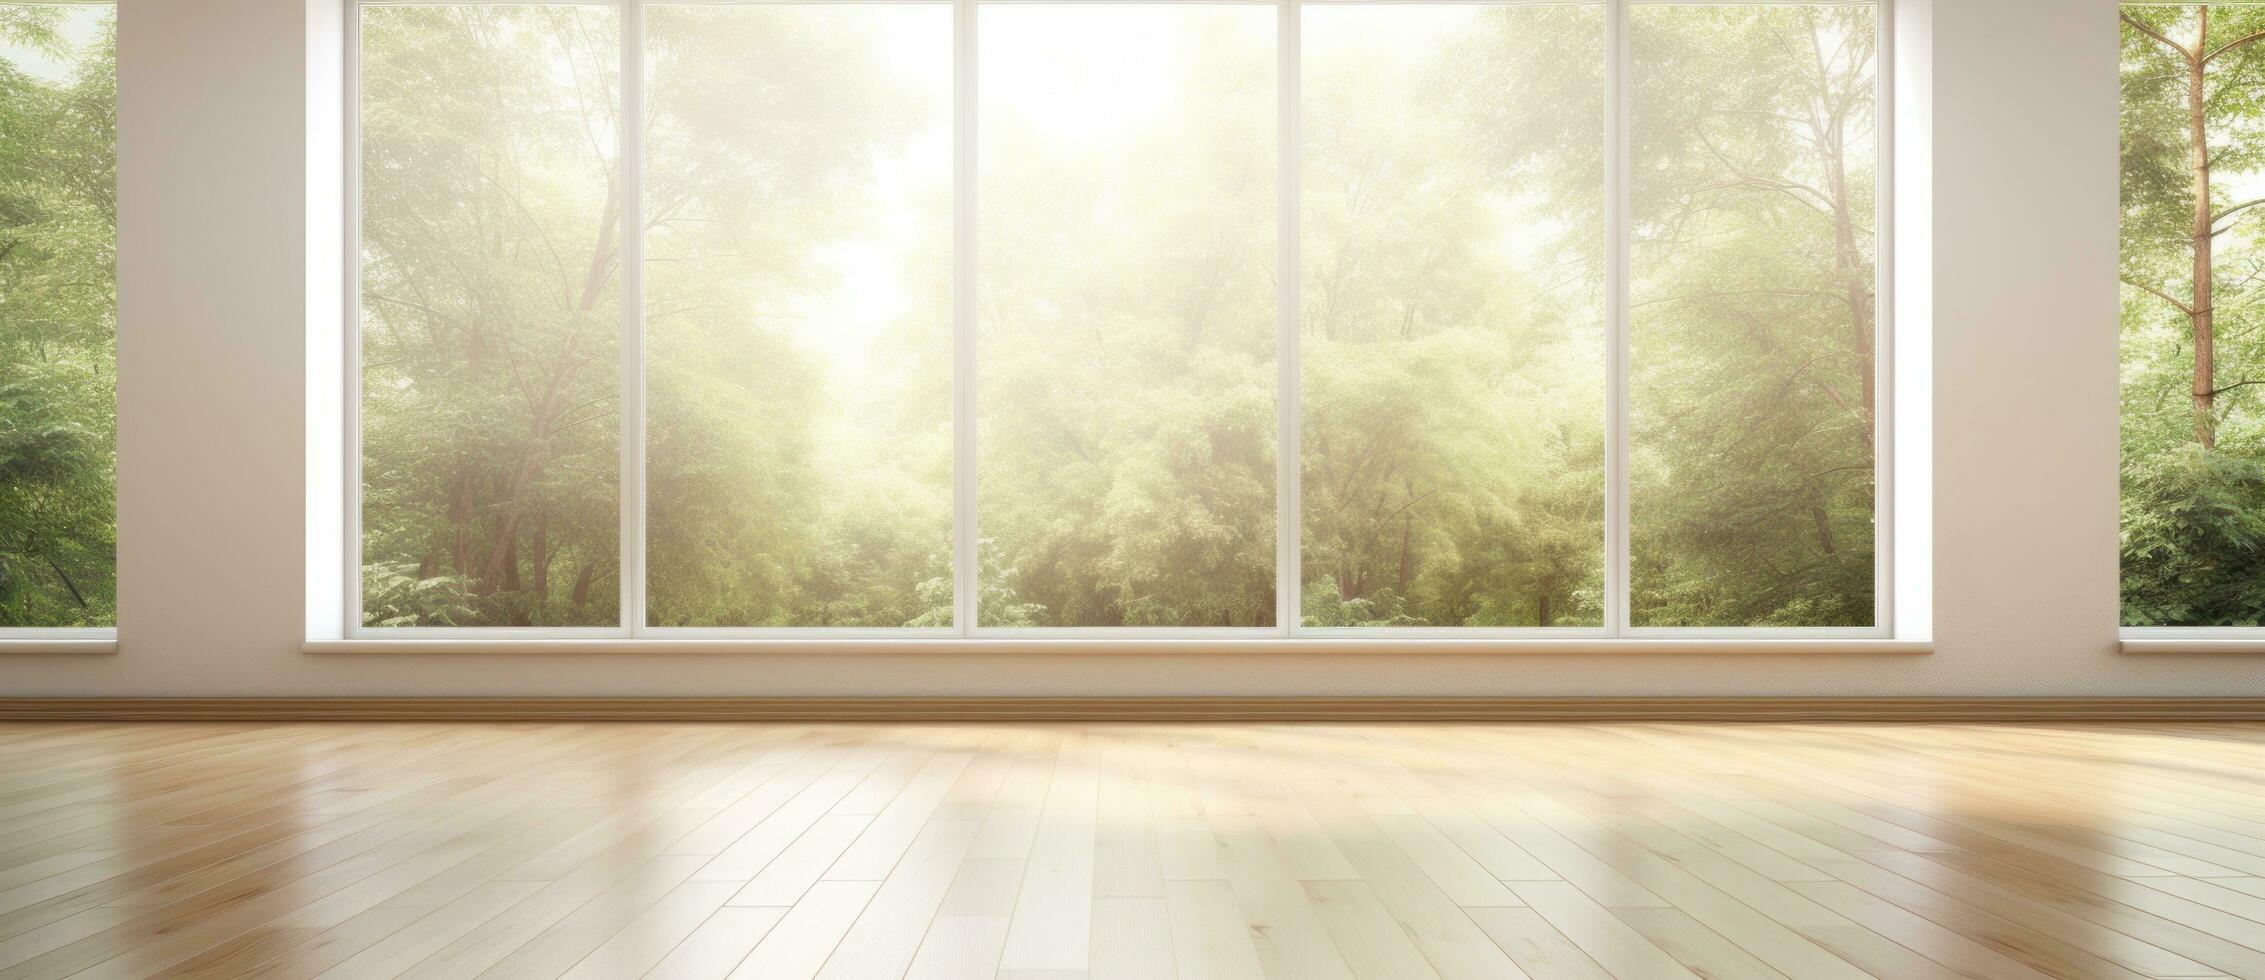 vacío habitación con pantano ventana y de madera piso foto